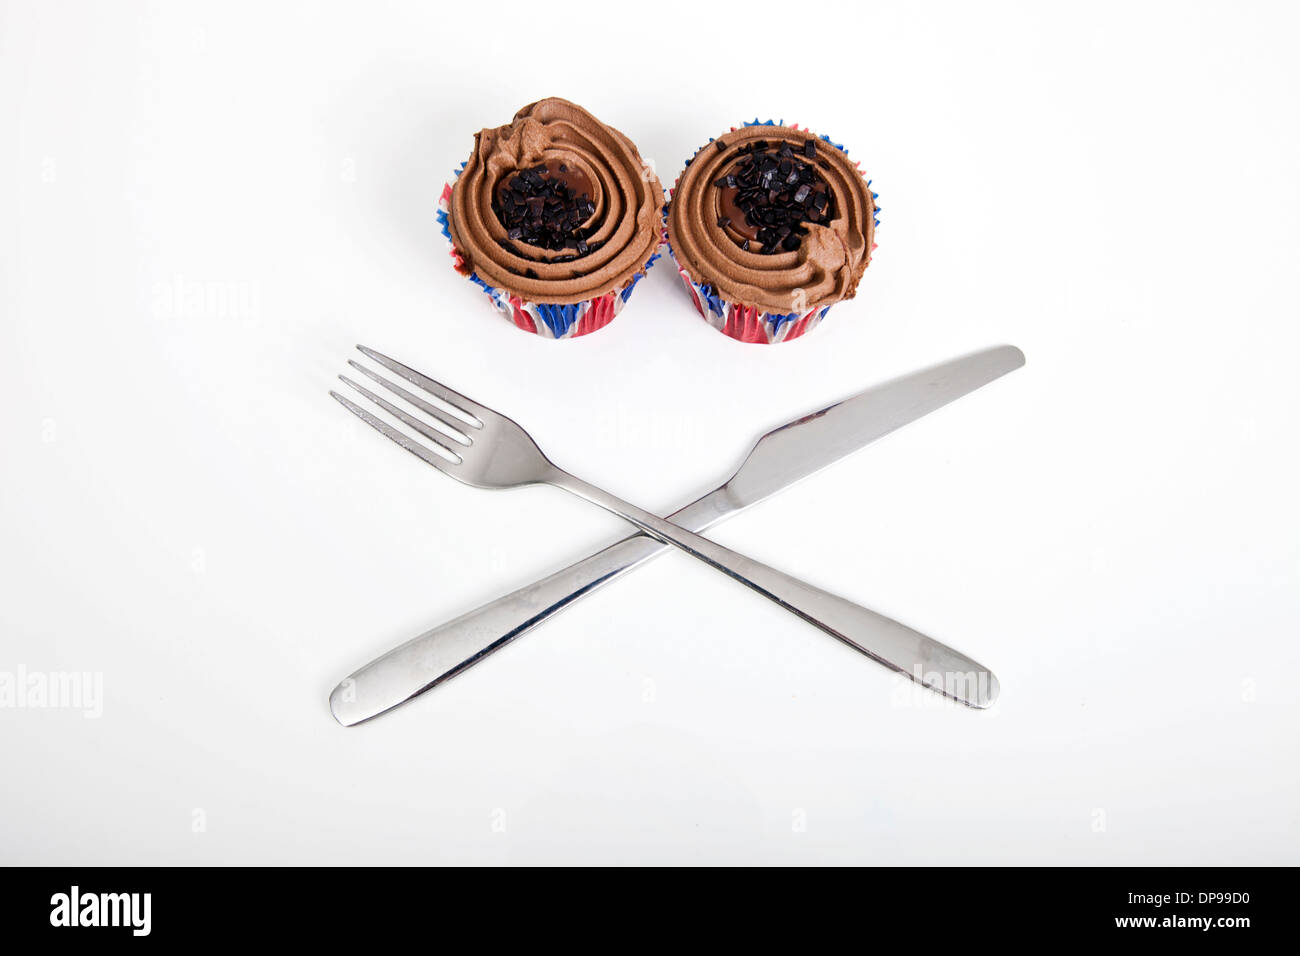 Union Jack Schokolade Cupcakes mit Gabel und Messer auf weißen Hintergrund Stockfoto